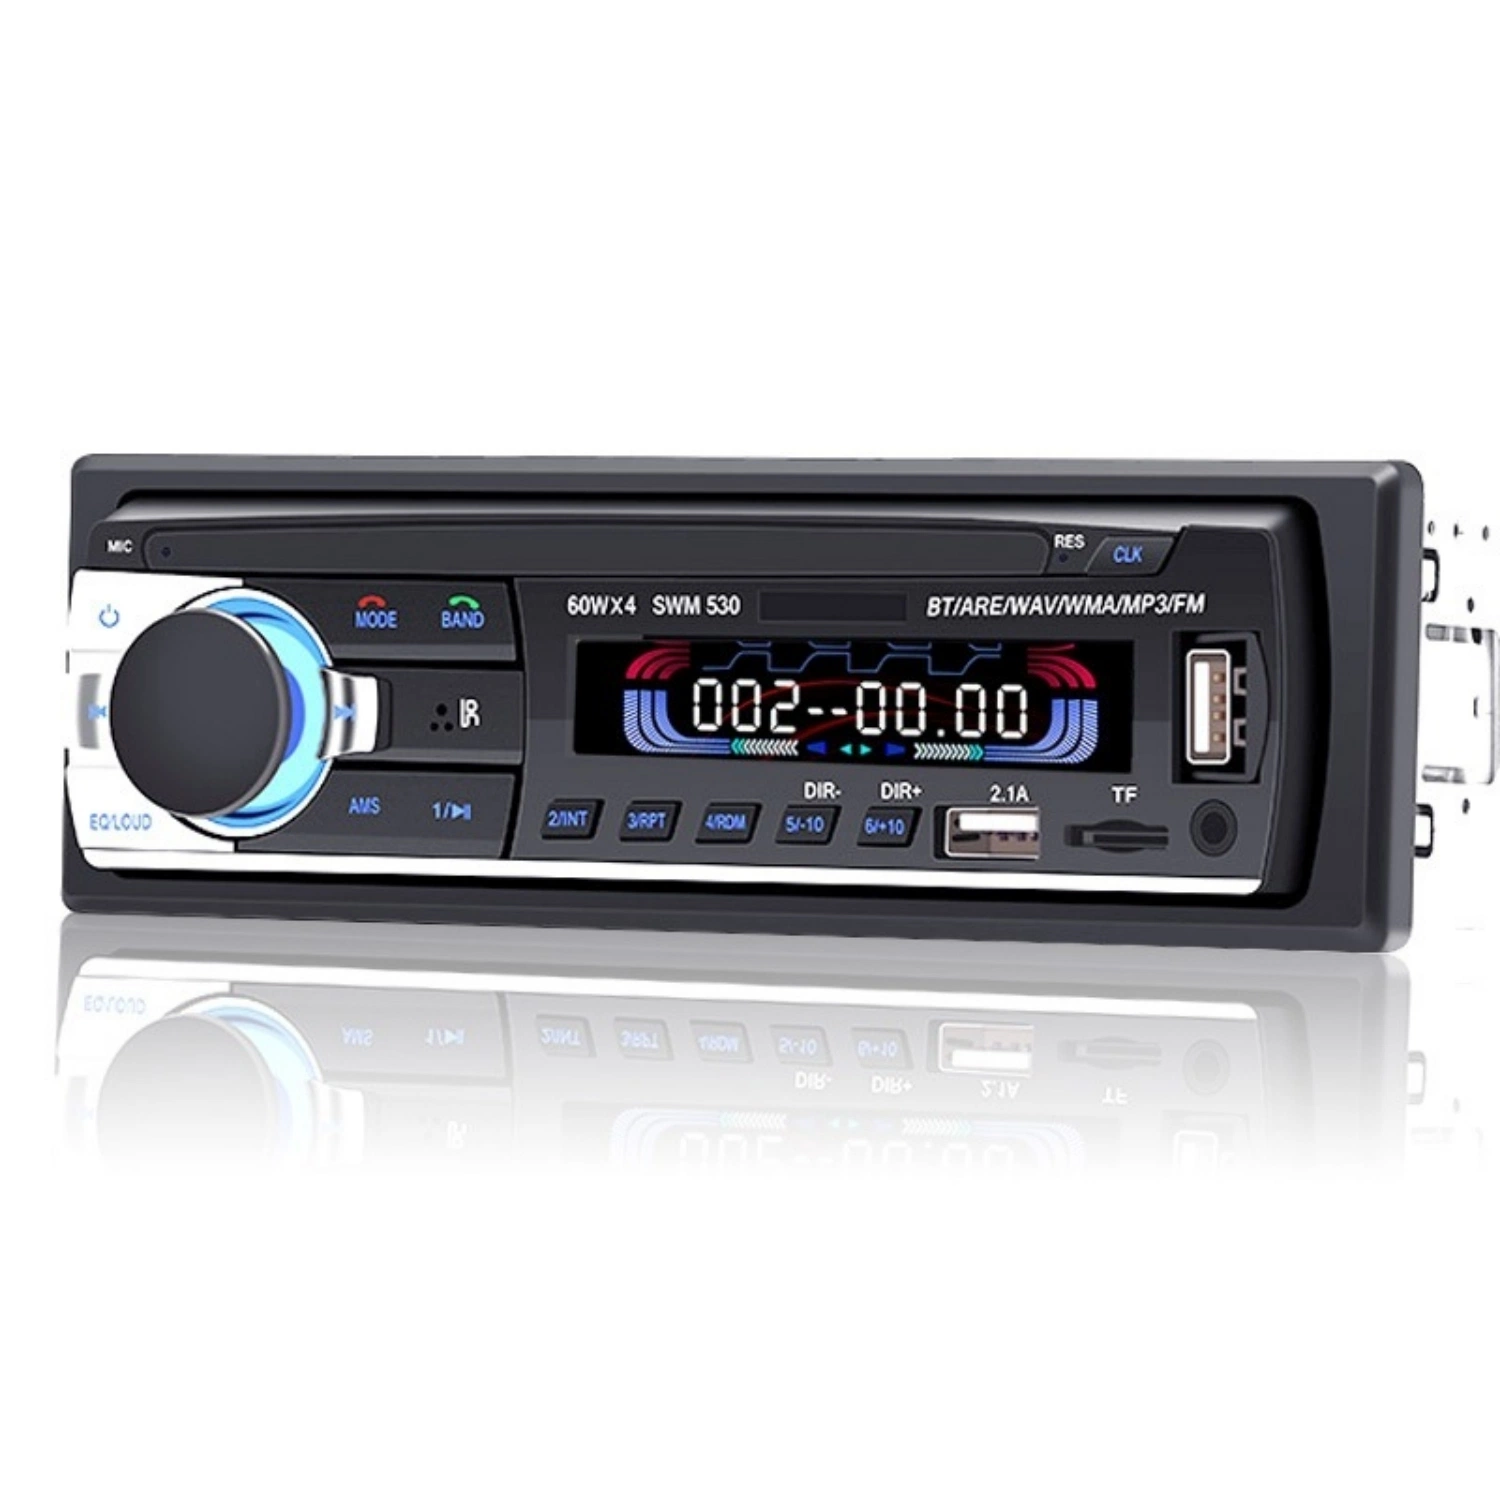 Gravador de MP3 para Carro com Bluetooth, Reprodutor de MP3 para Carro.